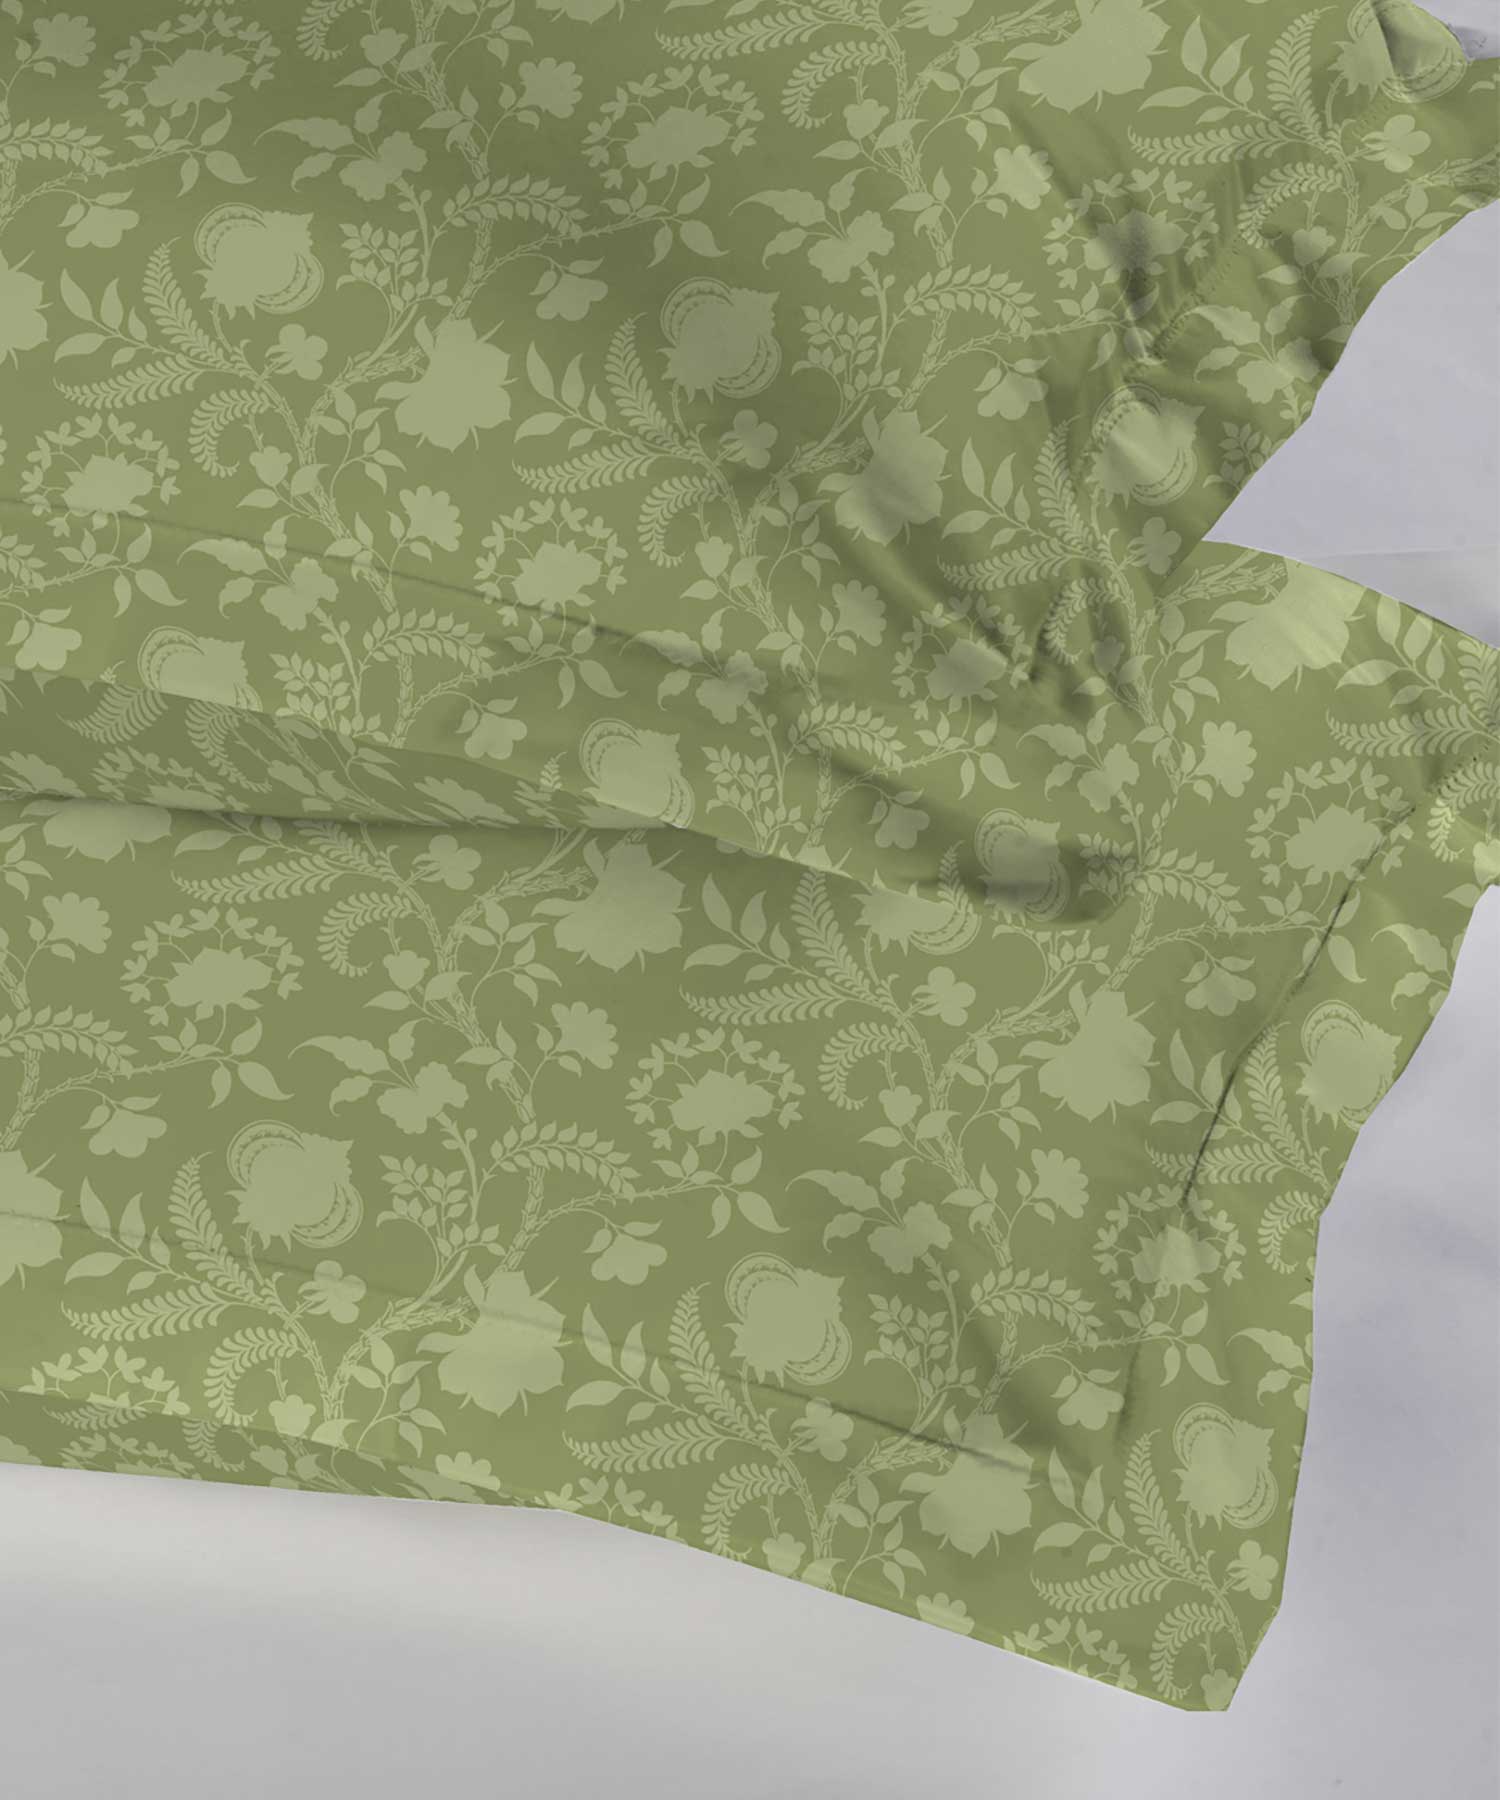 Soft Comfort Pillowcase Set,210 TC, 100% Cotton, English Chintz